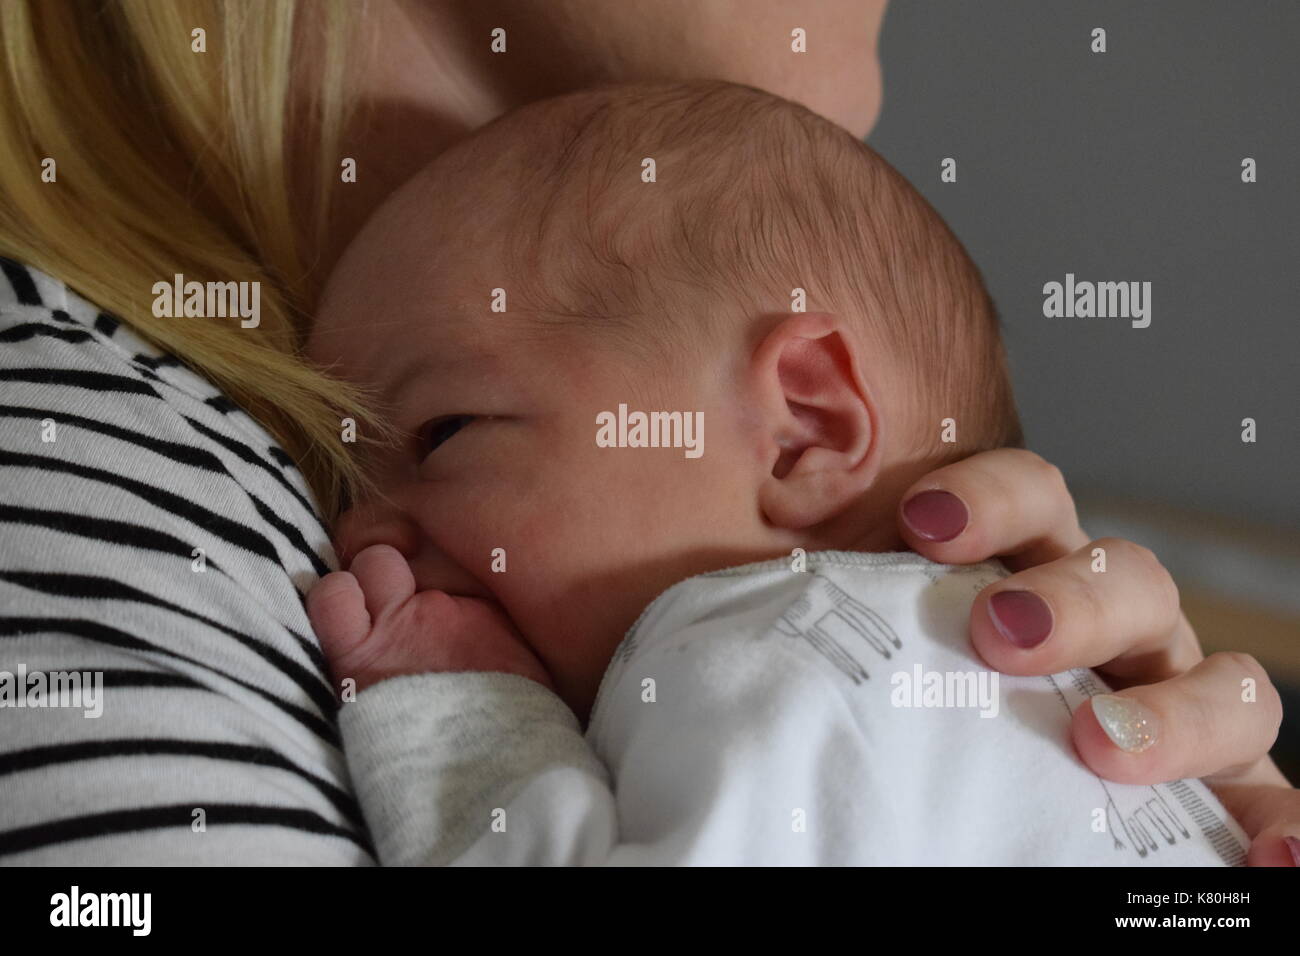 New Born Baby Boy abraza con su madre Foto de stock